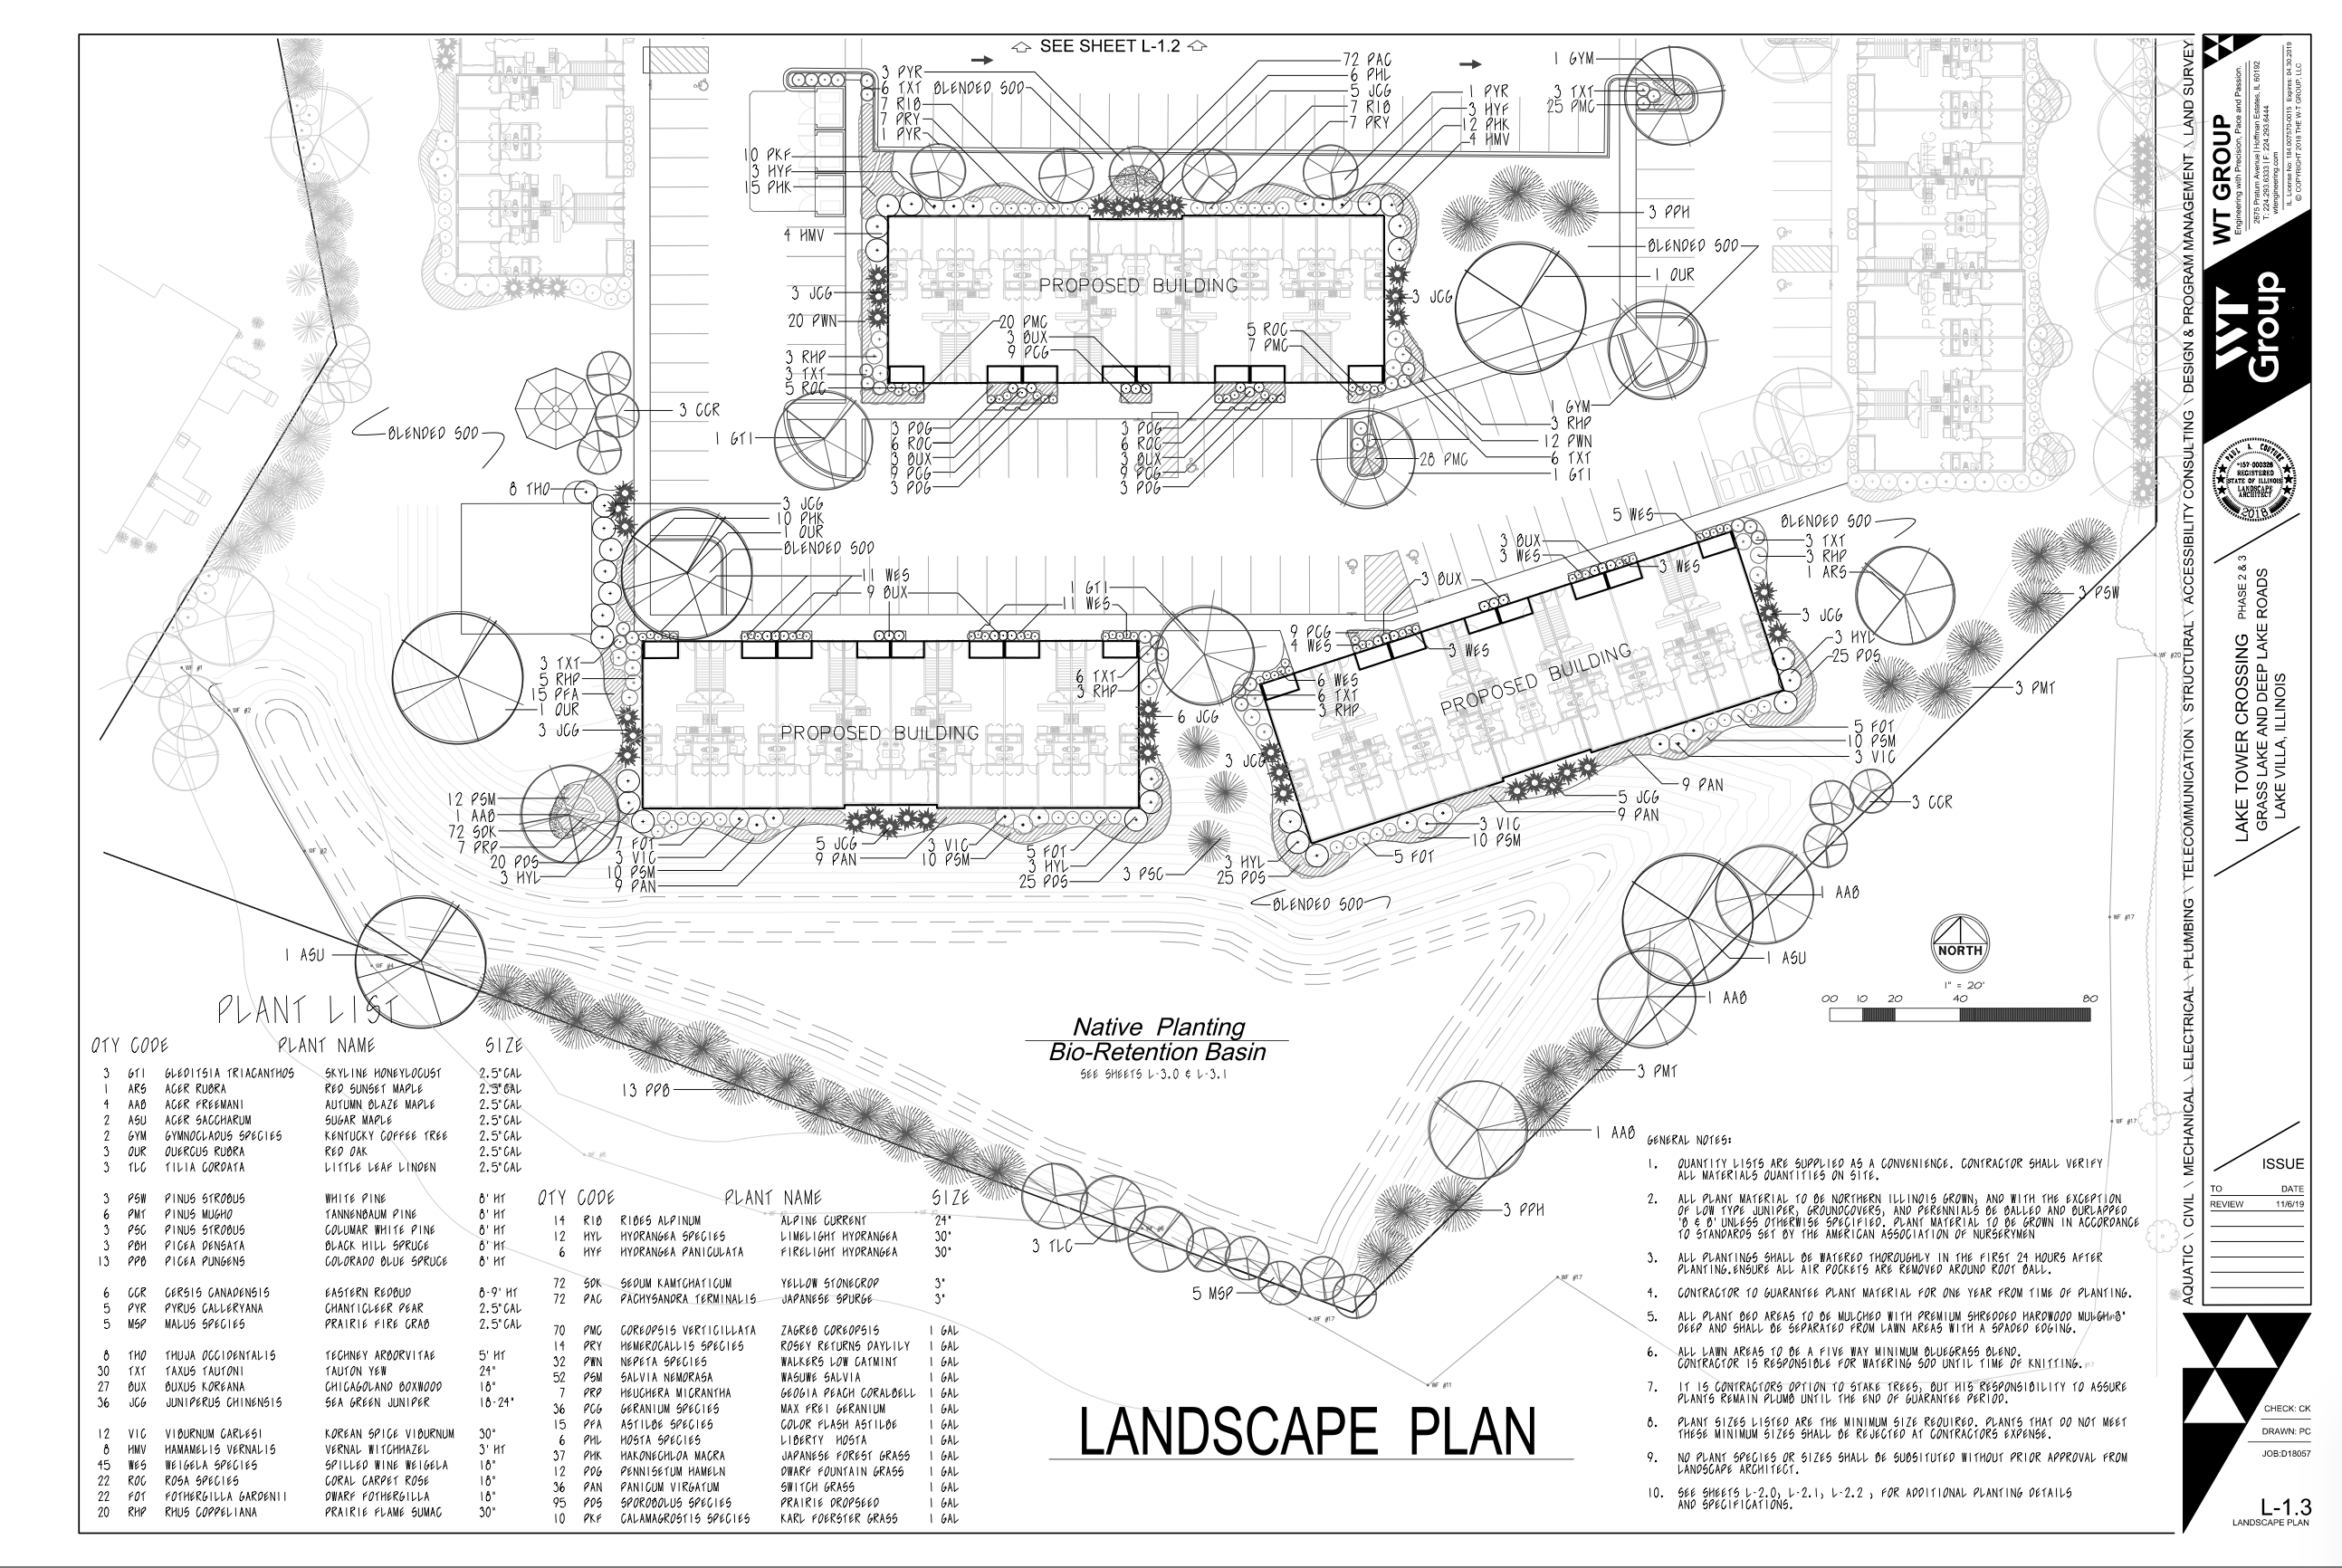 Tower Drive Development Inc.- Landscape Plans